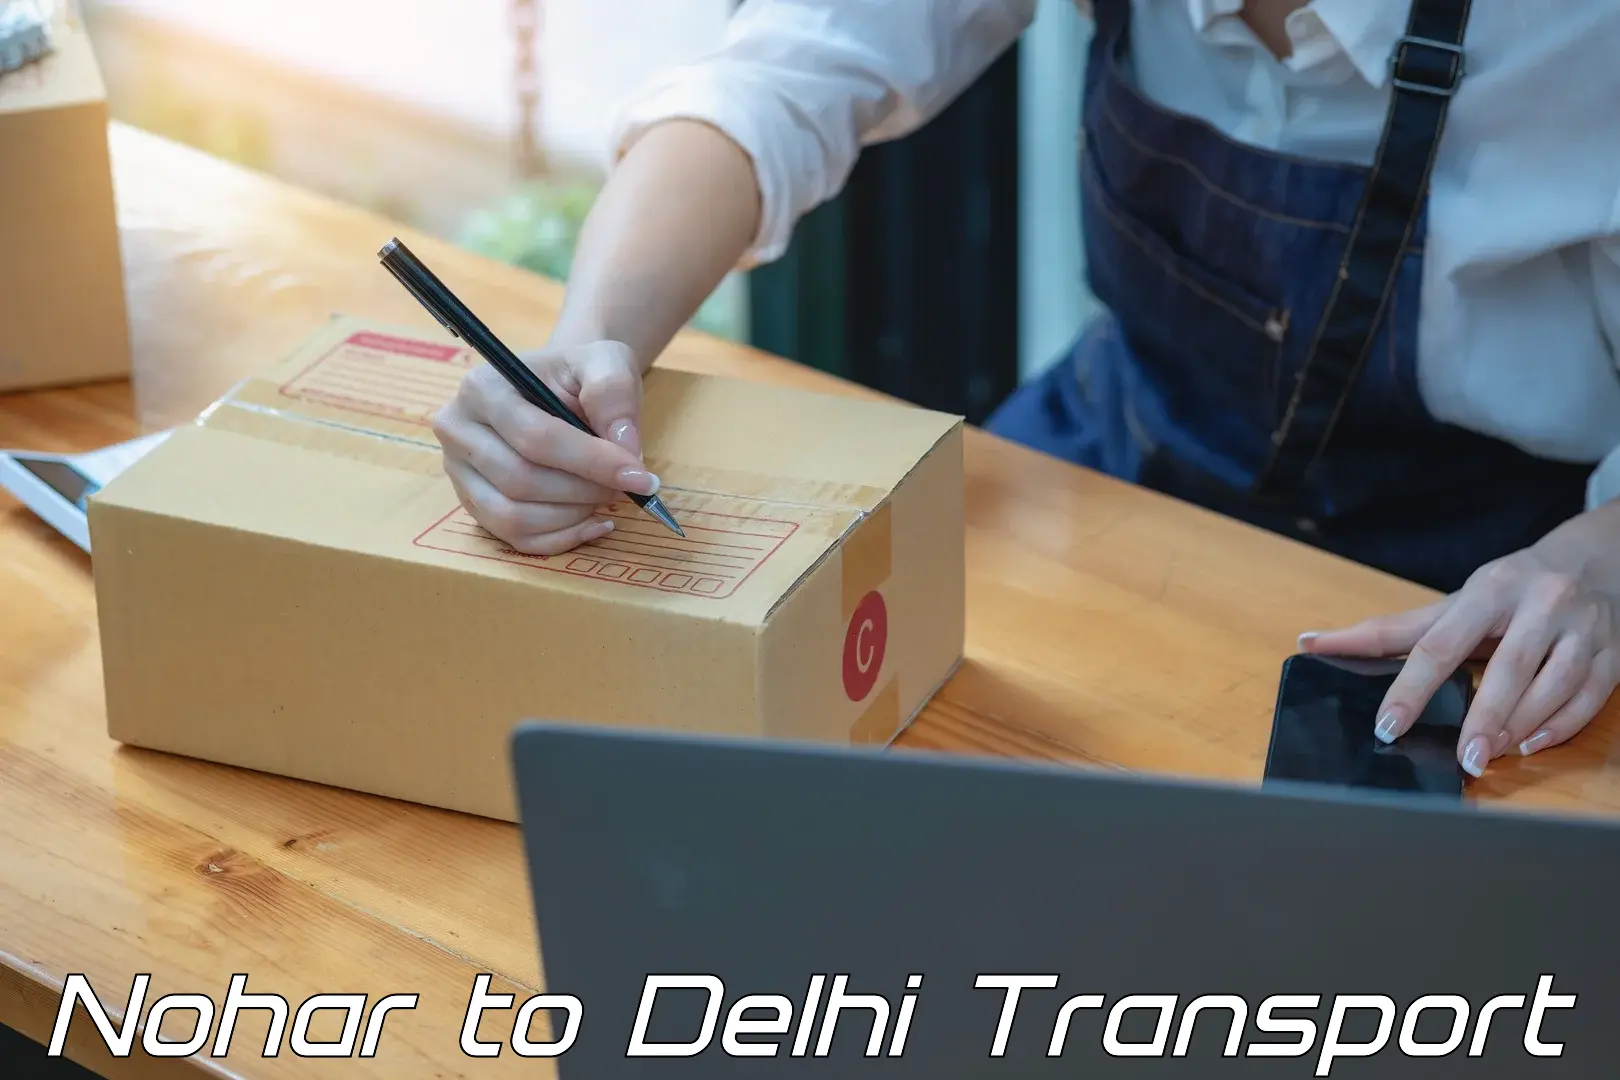 Parcel transport services Nohar to Delhi